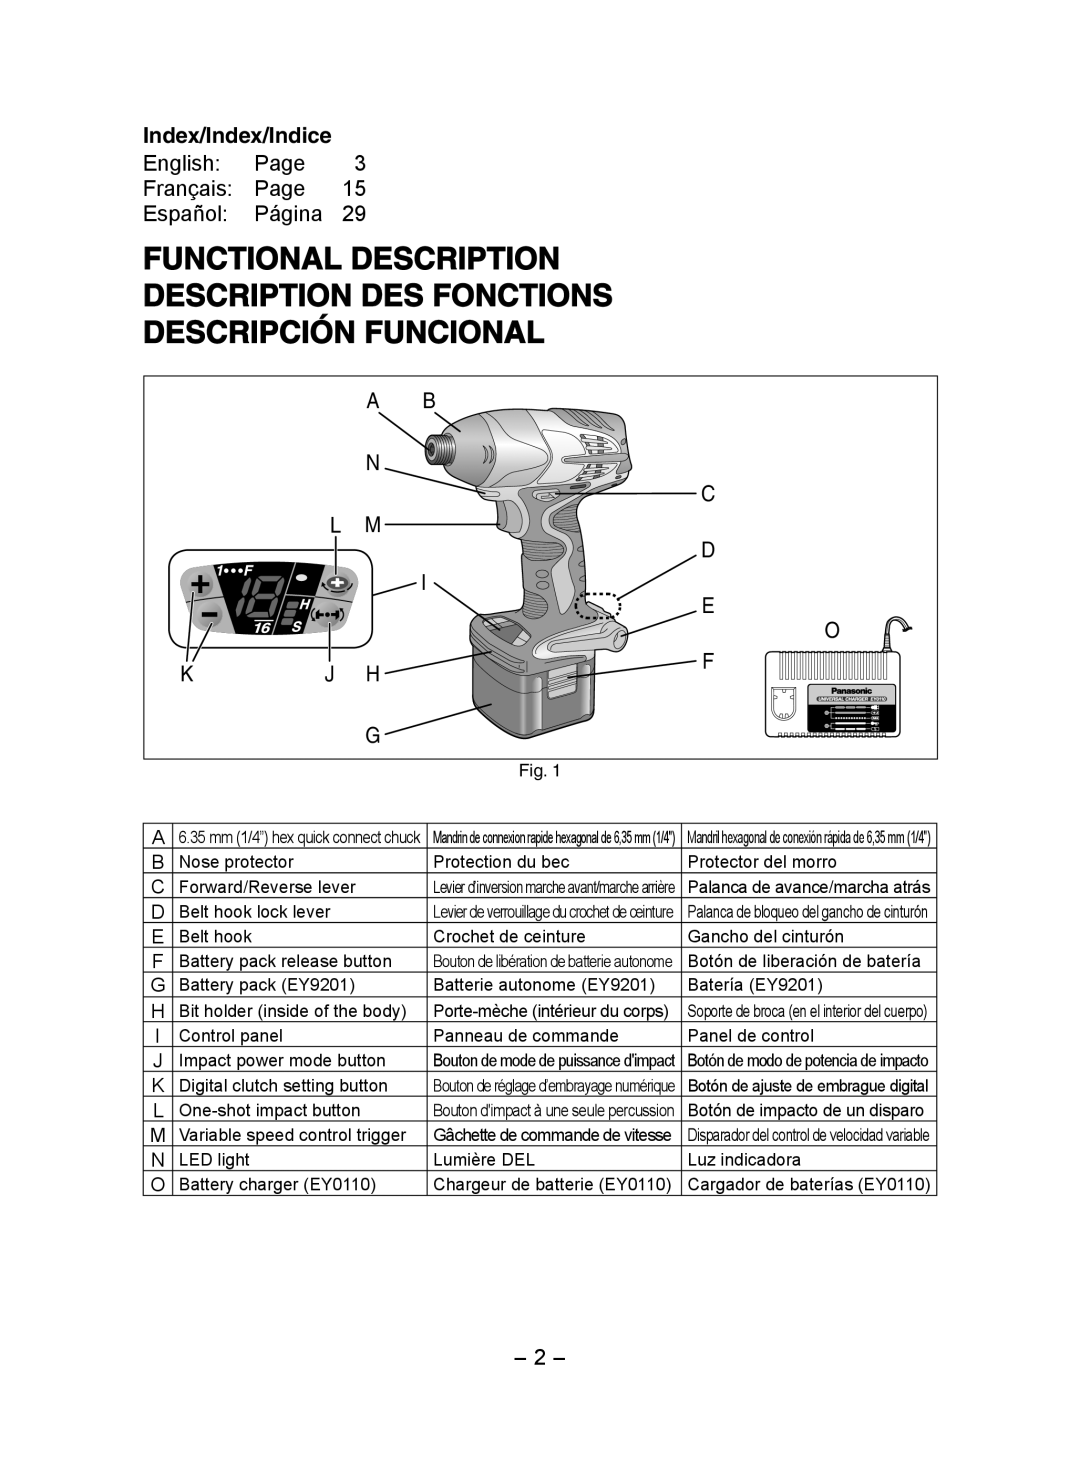 Panasonic EY7202 Functional Description Description Des Fonctions, Descripción Funcional, Index/Index/Indice 